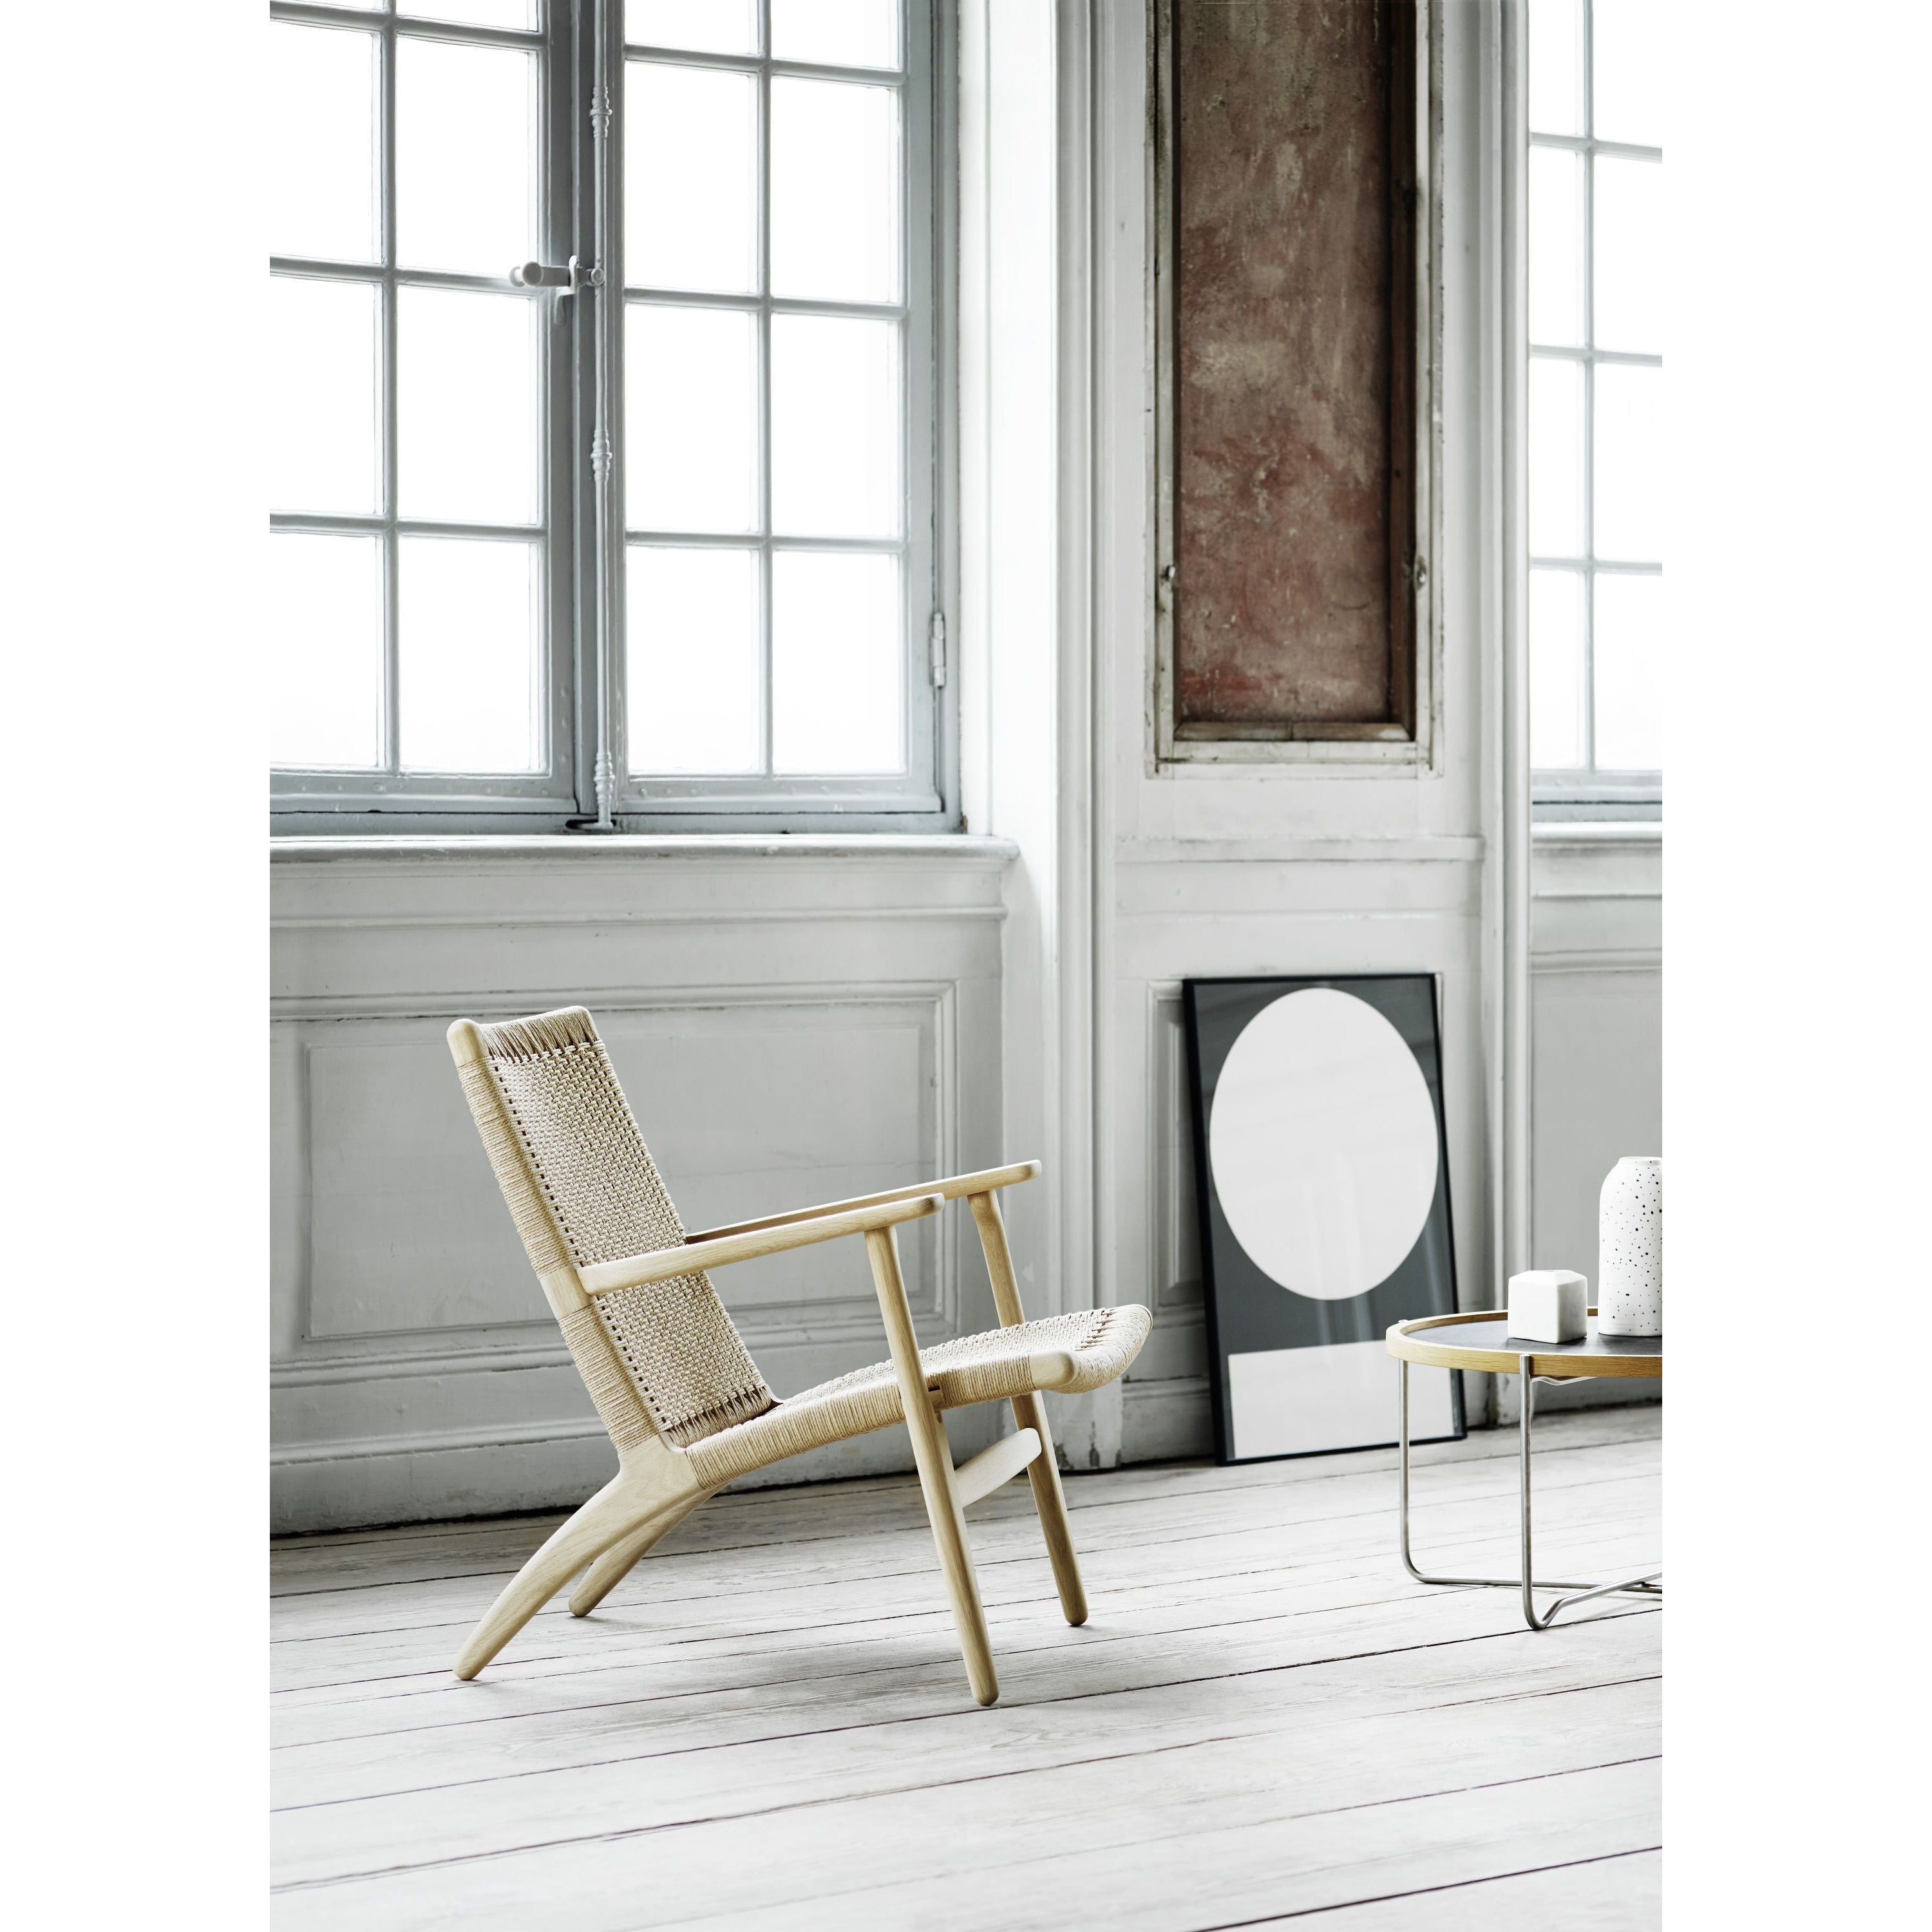 Krzesło Lounge Carl Hansen CH25, kolorowy dąb/czarny papier